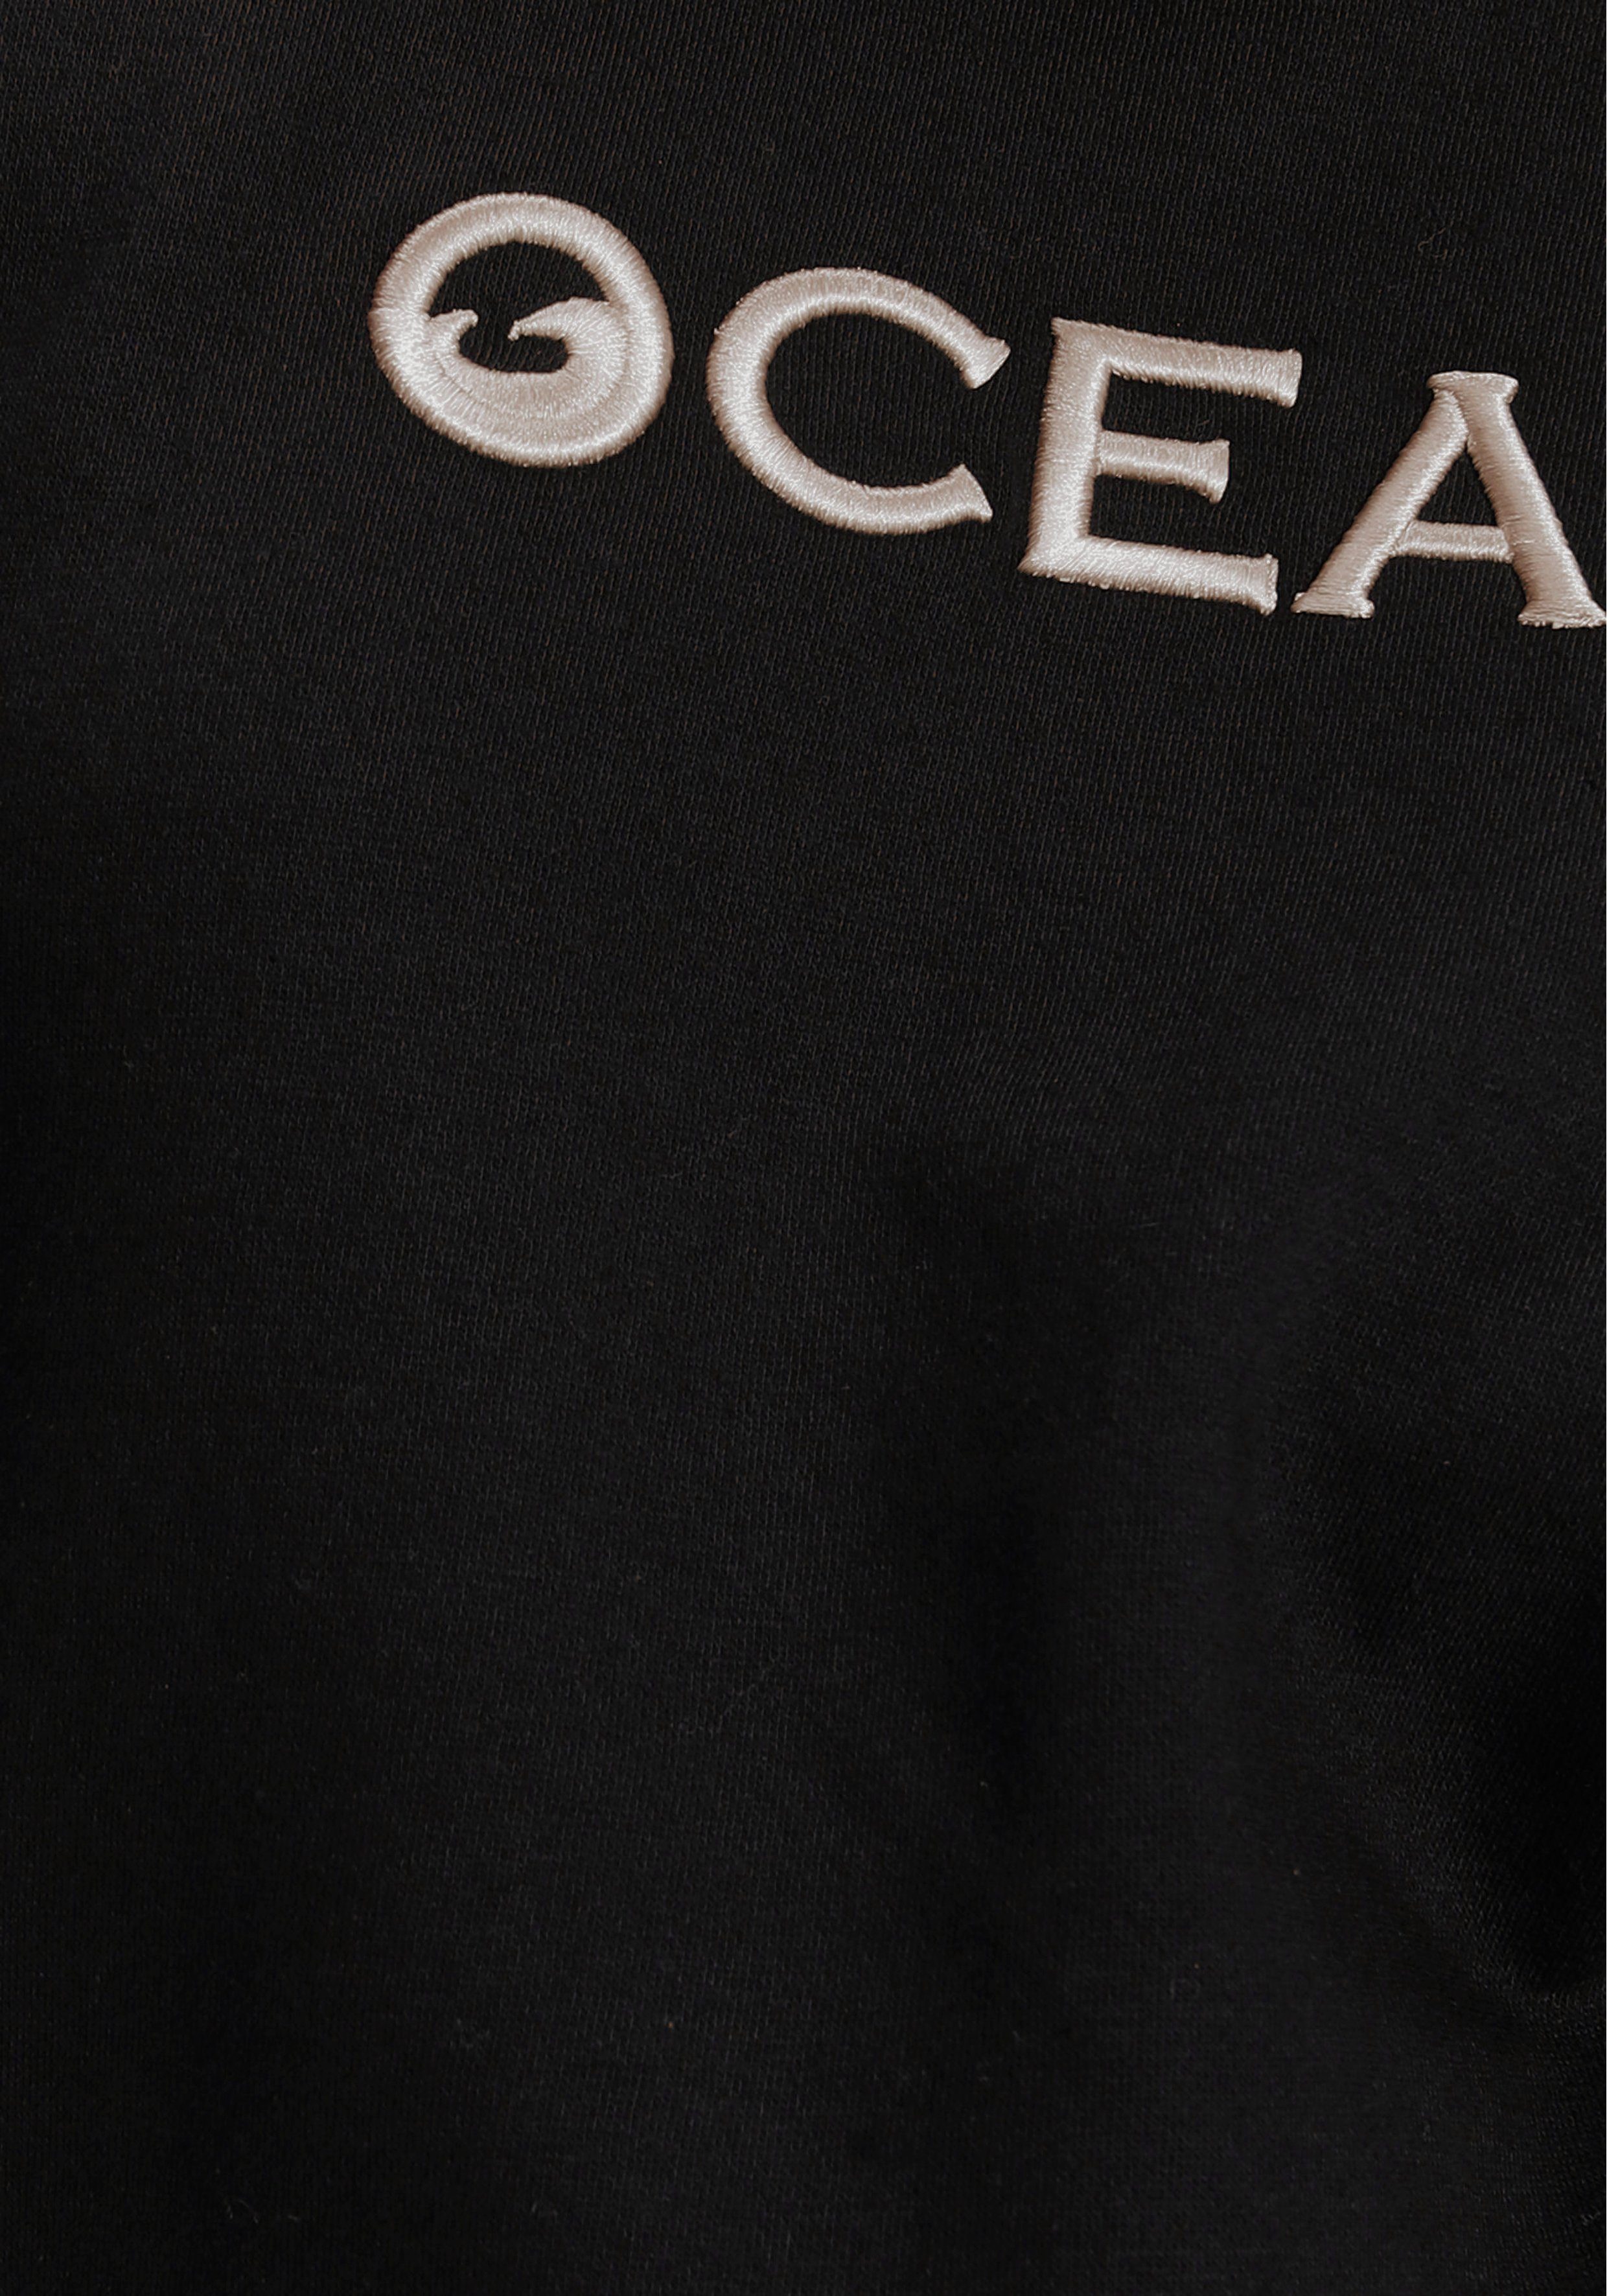 Jogginganzug Baumwolle reiner Ocean aus Jogginghose Sportswear Longhoody + (2-tlg),